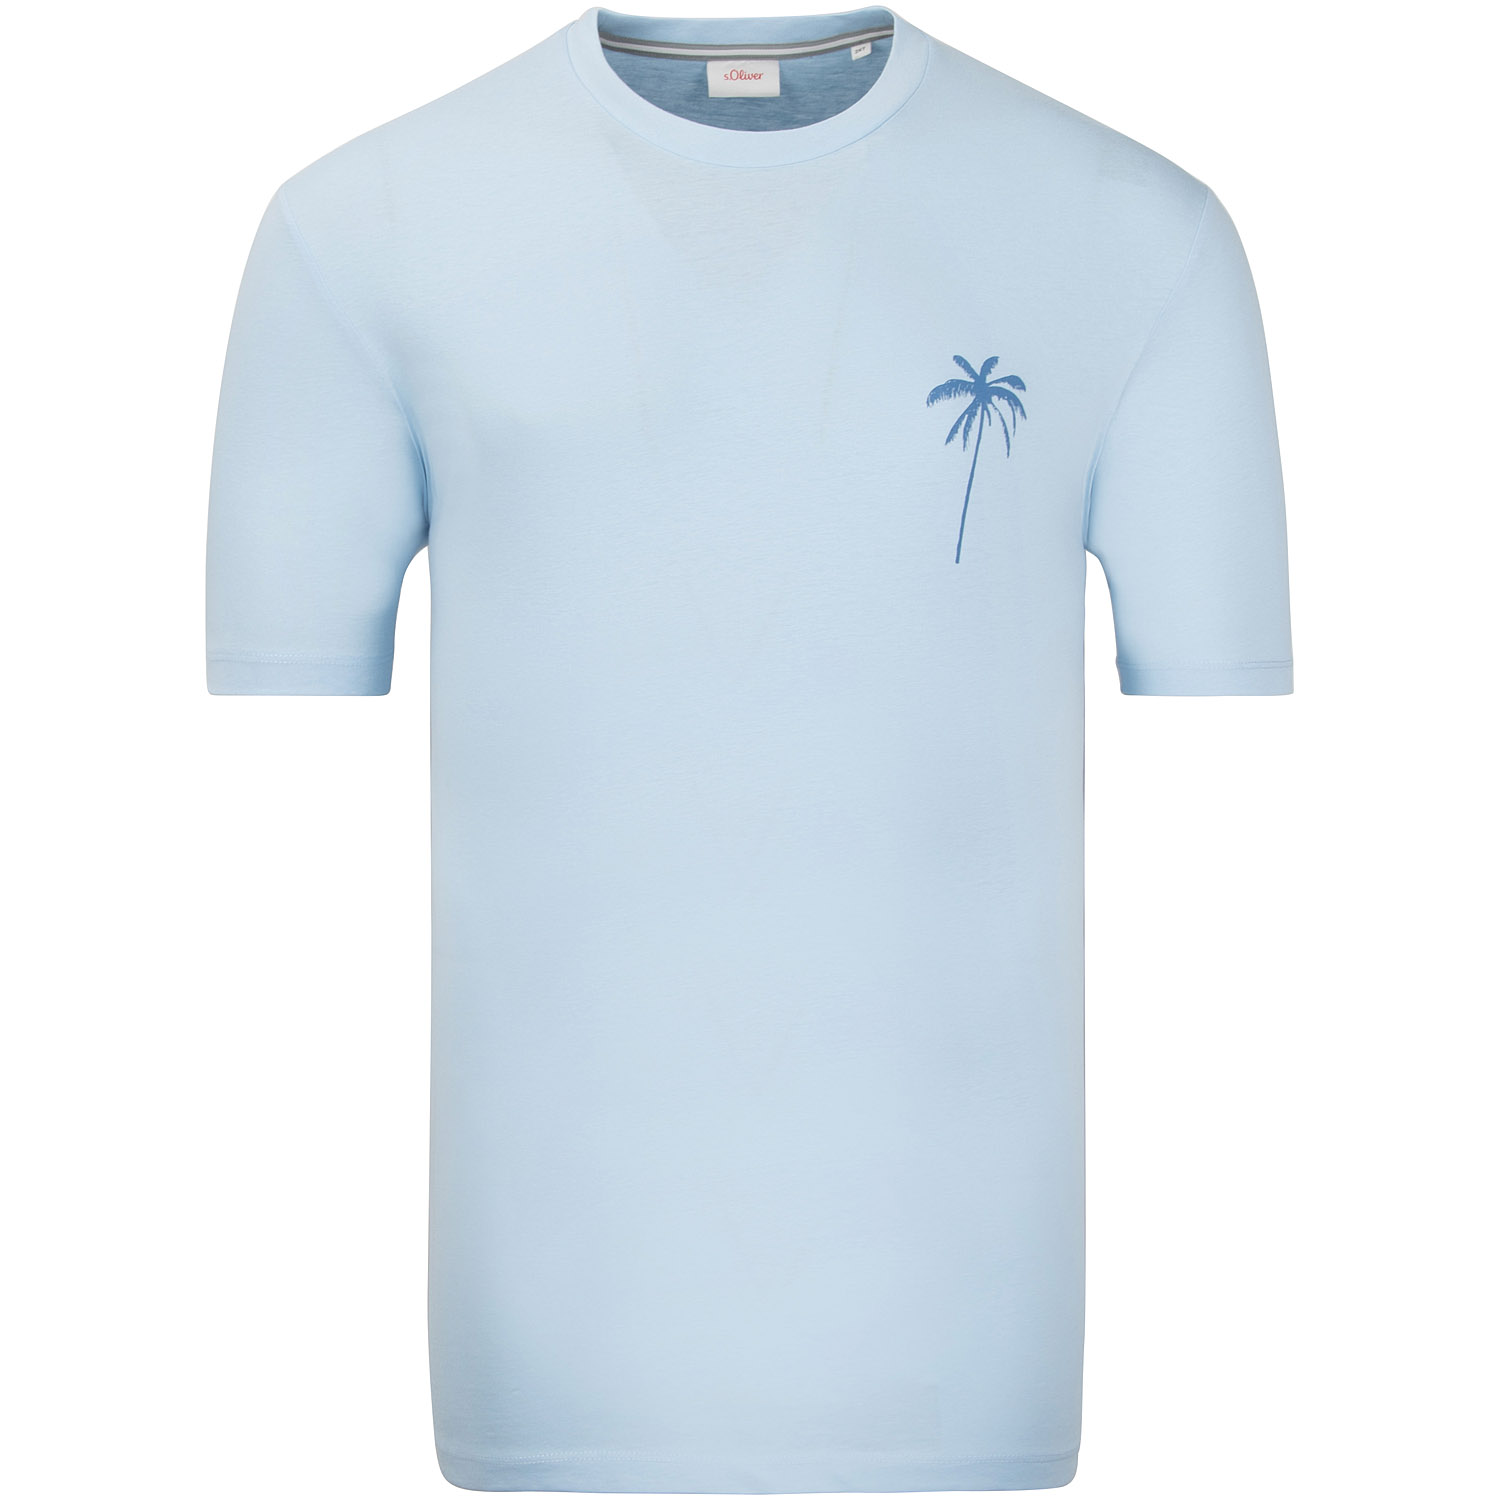 S.OLIVER T-Shirt - EXTRA lang hellblau Herrenmode in Übergrößen kaufen